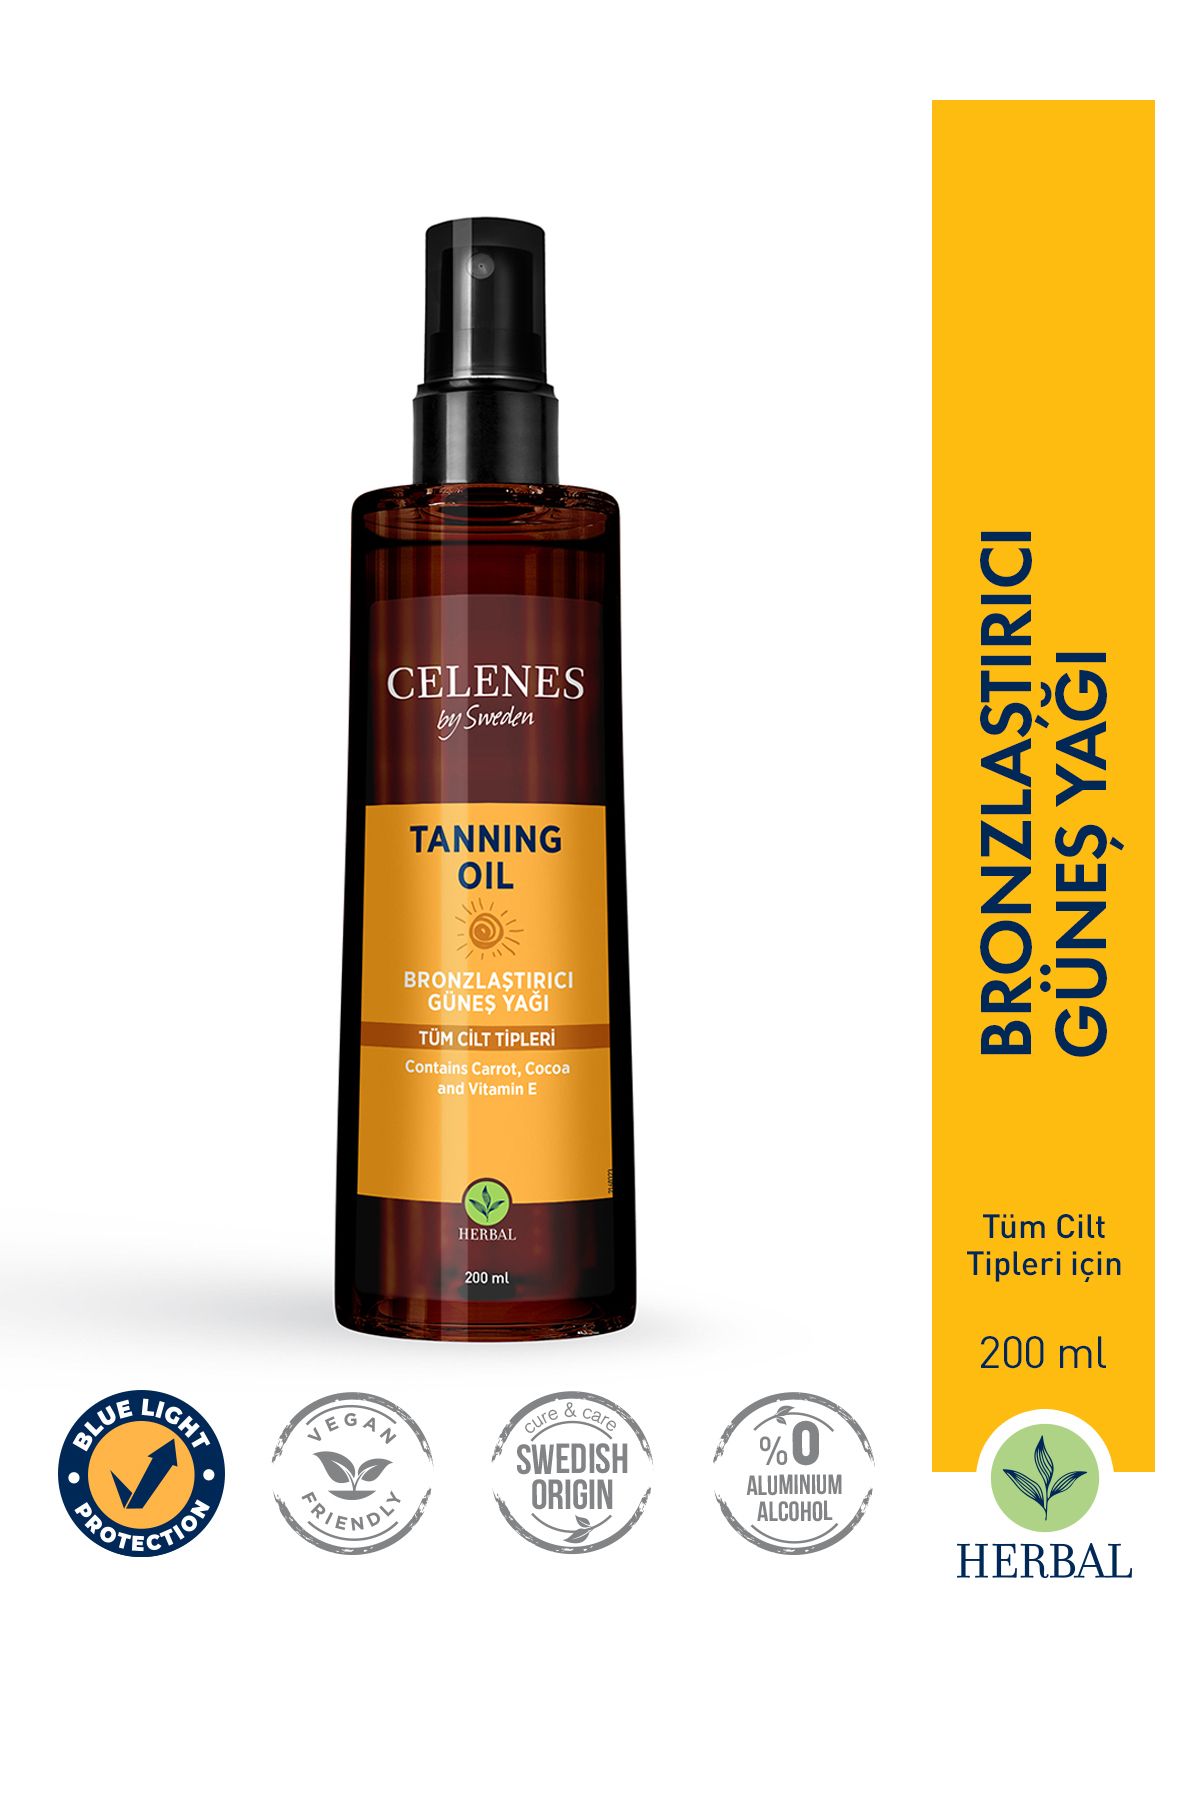 Celenes by Sweden Herbal Bronzlaştırıcı Güneş Yağı 200 ml